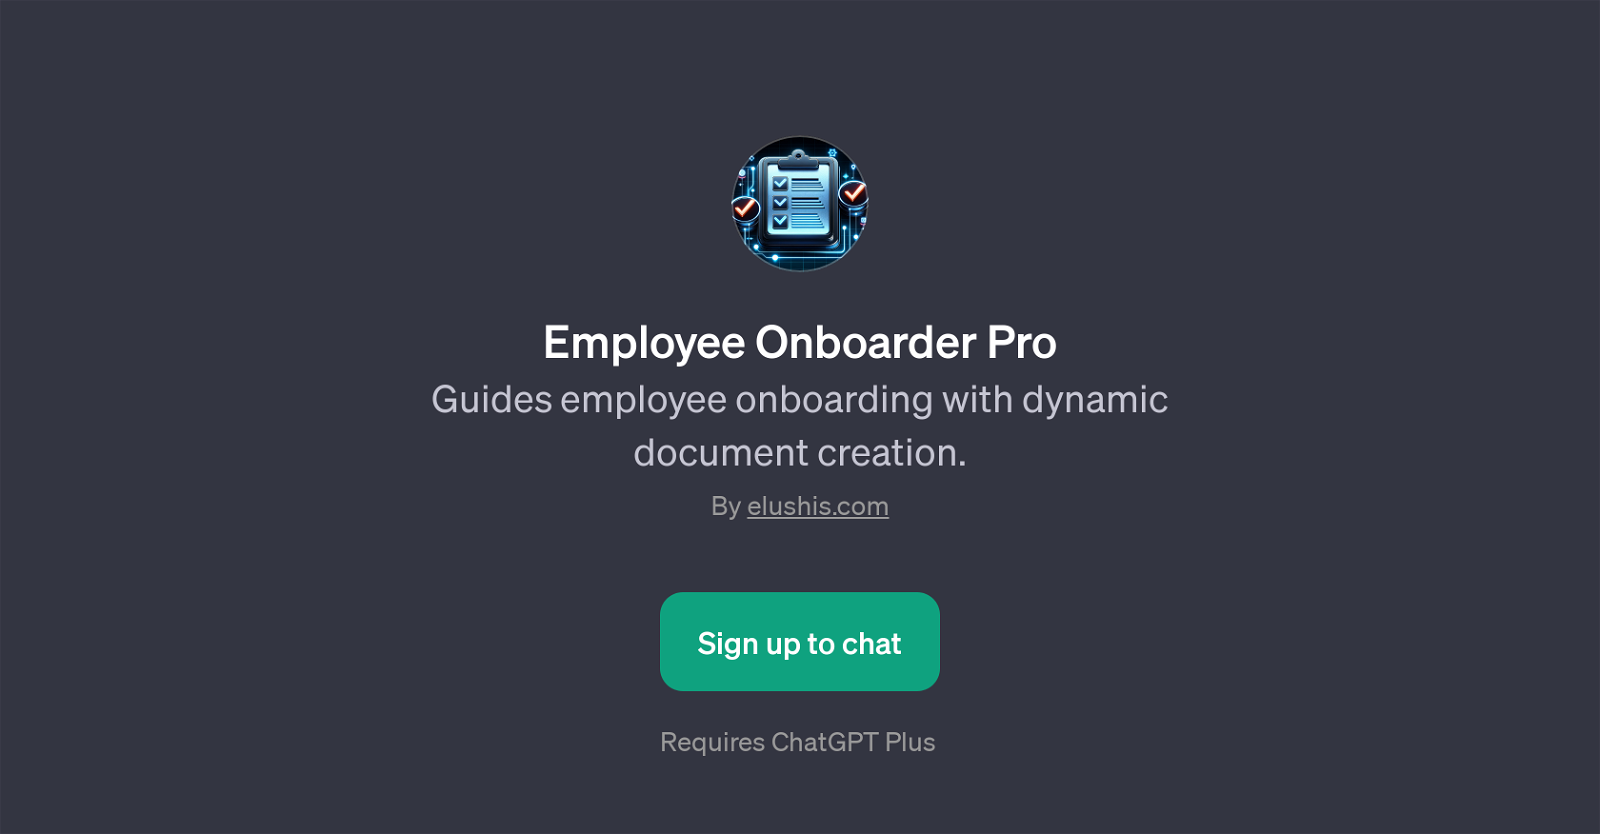 Employee Onboarder Pro website